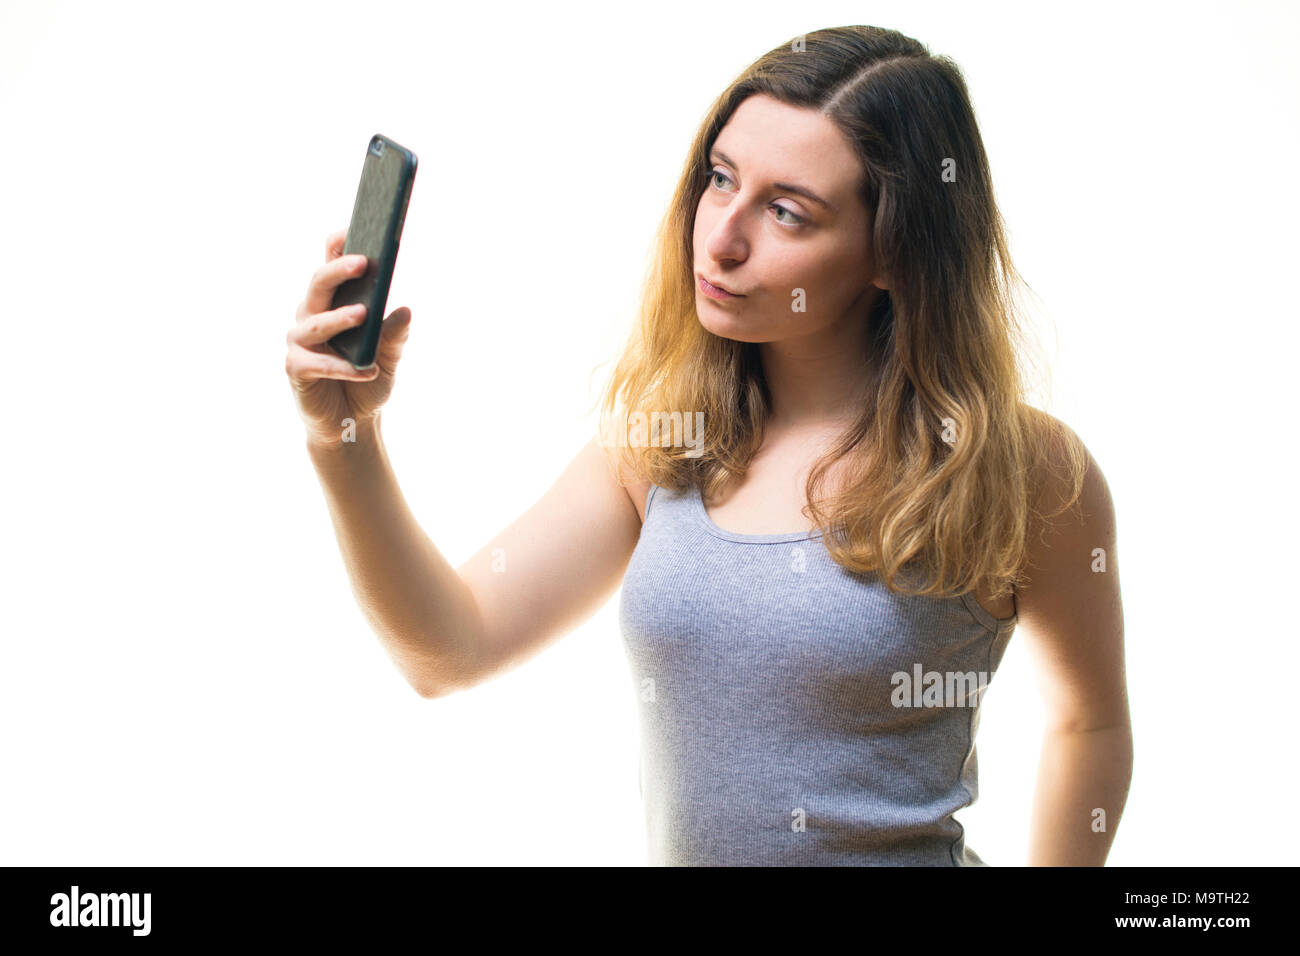 Une jeune femme de race blanche girl making a l'aide d'une photographie selfies iPhone téléphone cellulaire téléphone mobile , d'afficher sur son instagram snapchat et autres médias sociaux - UK Banque D'Images